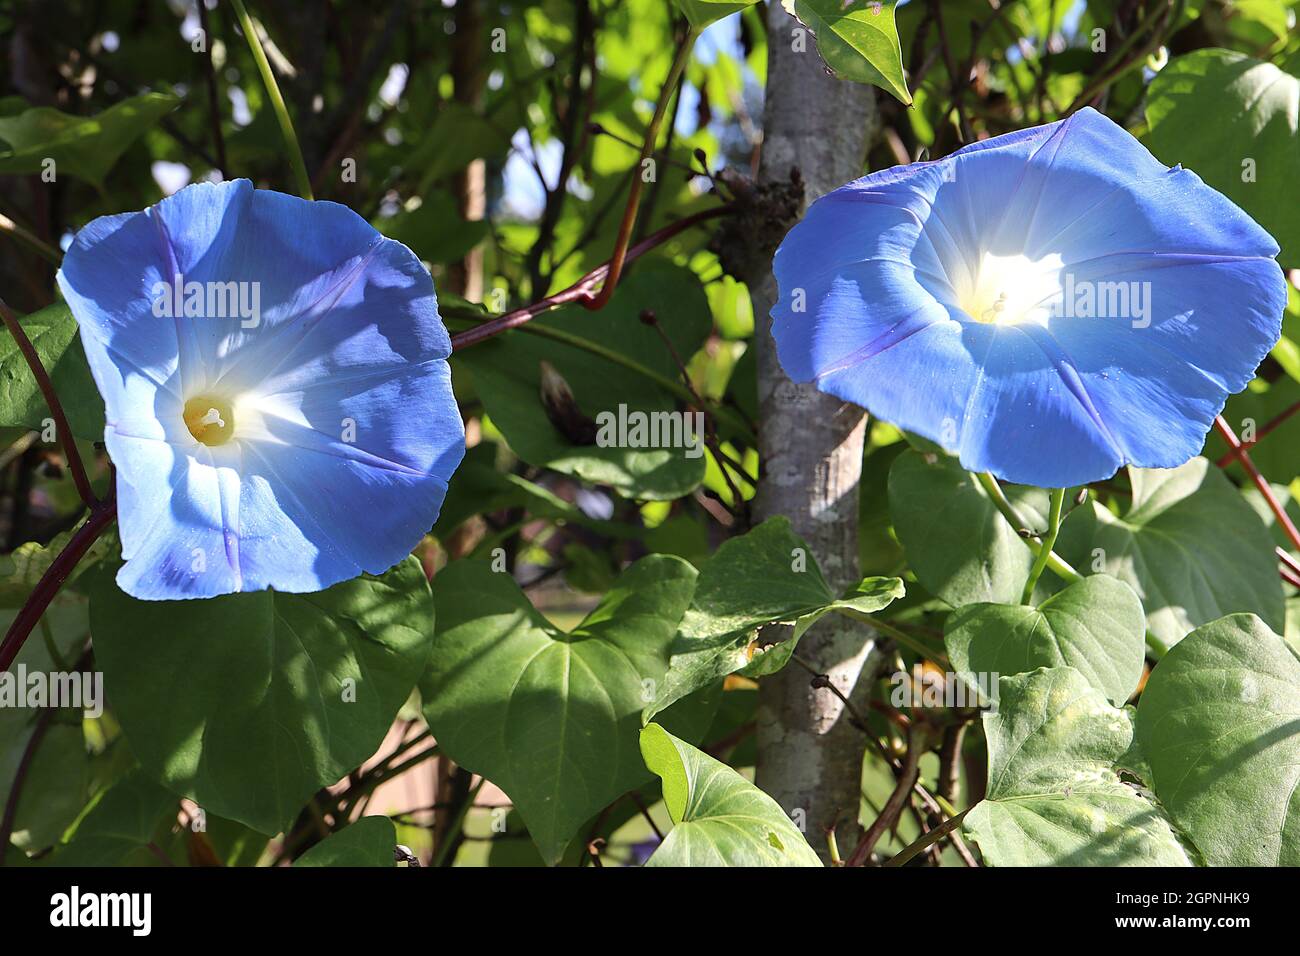 Ipomoea tricolore ‘Heavenly Blue’ gloria del mattino celeste Blu - cielo blu fiori a forma di imbuto, settembre, Inghilterra, Regno Unito Foto Stock